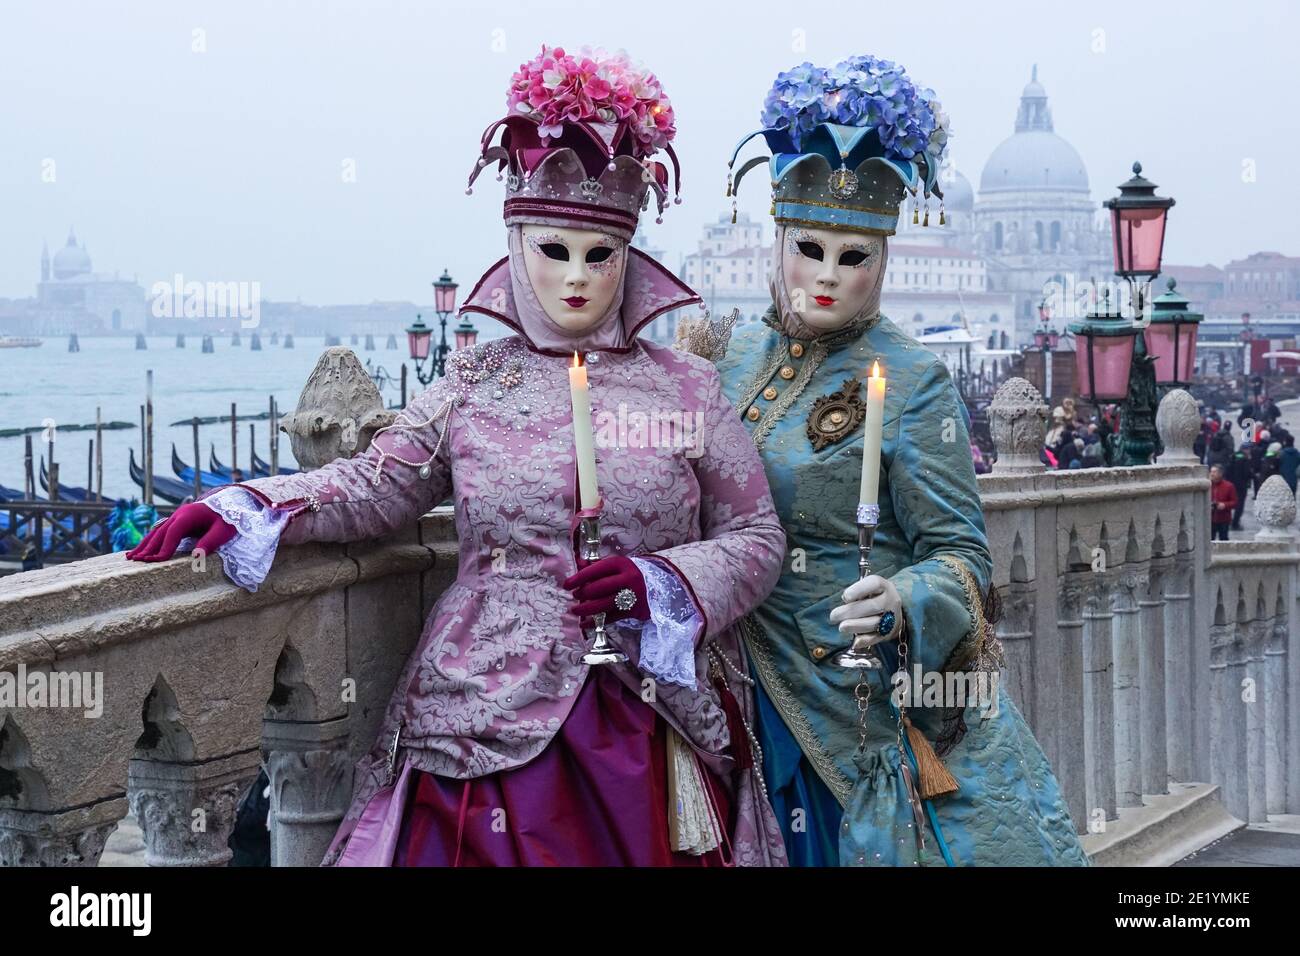 Femmes vêtues de costumes traditionnels décorés et de masques peints pendant le Carnaval de Venise à Venise, Italie Banque D'Images